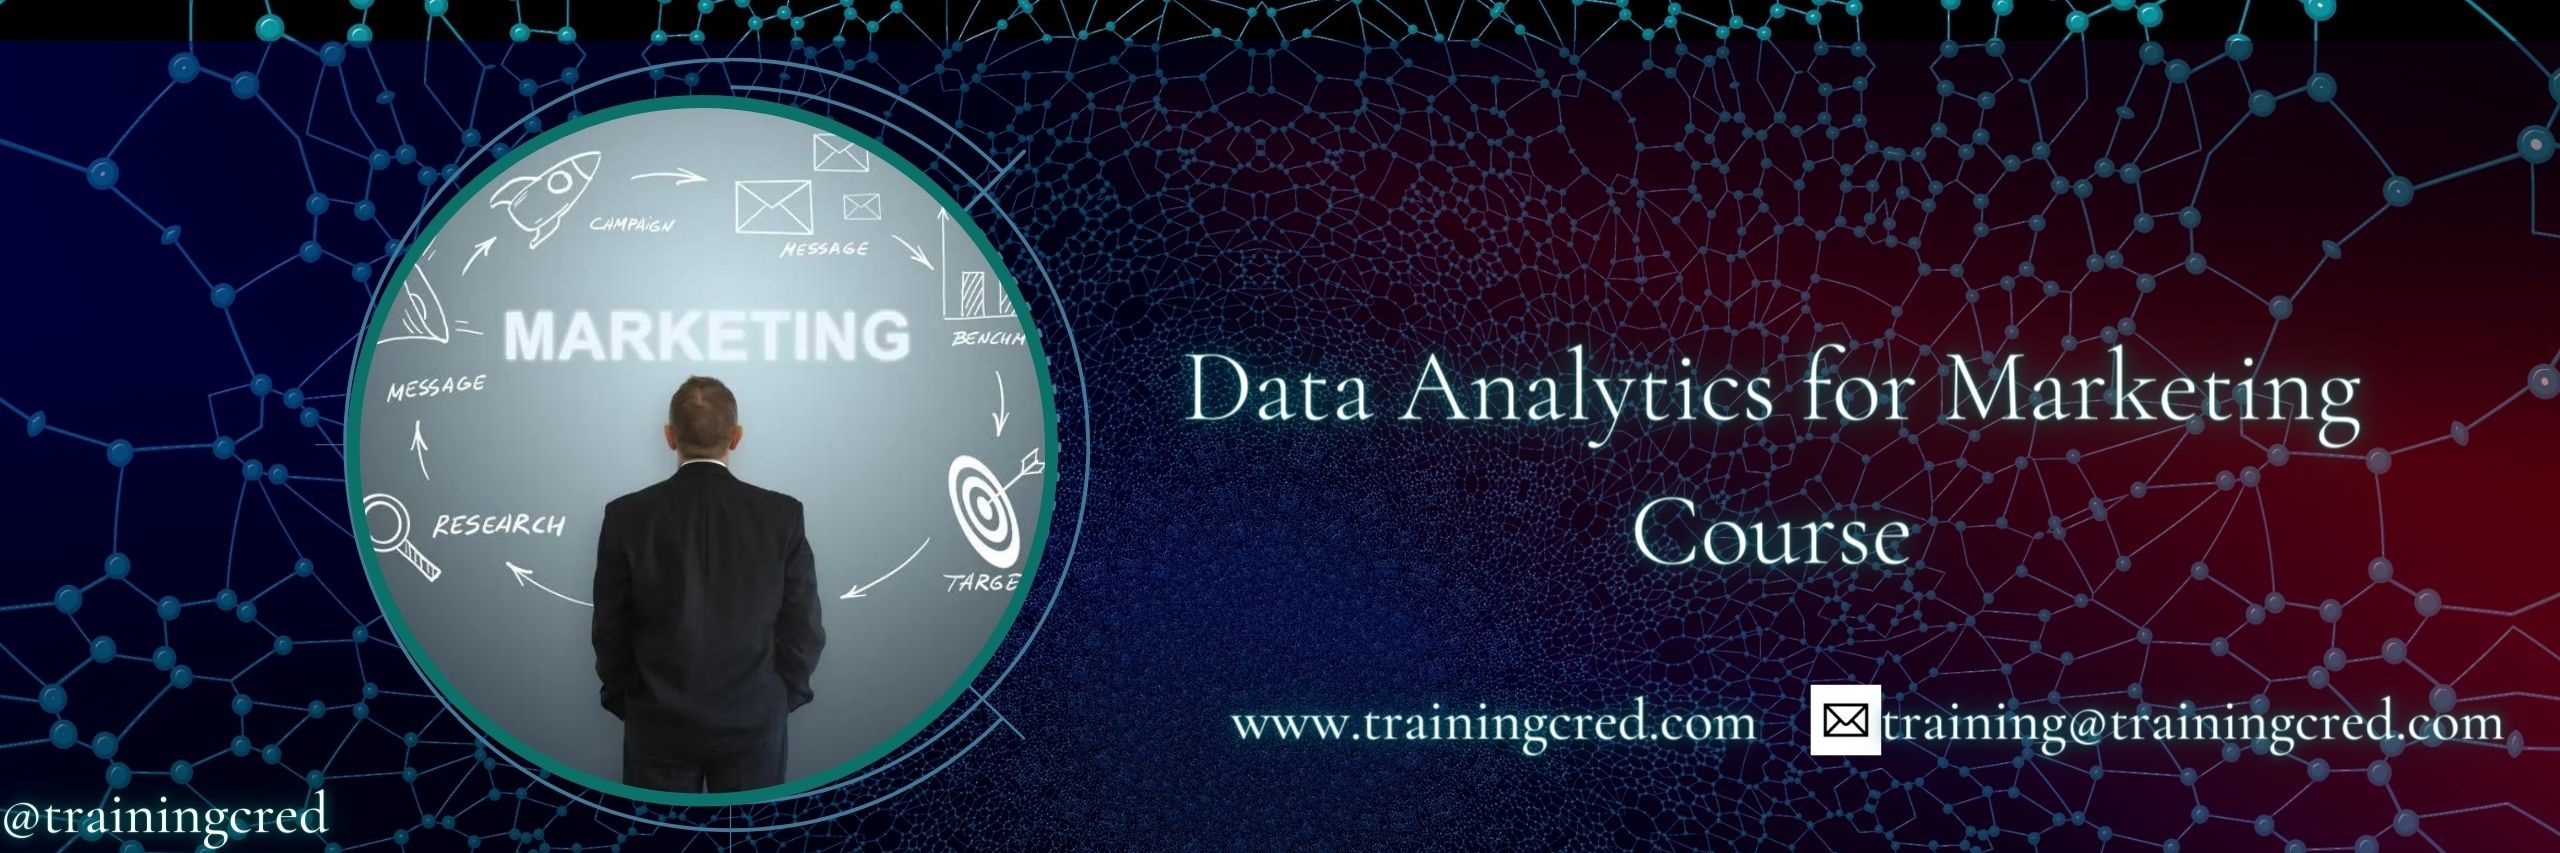 Data Analytics for Marketing Training